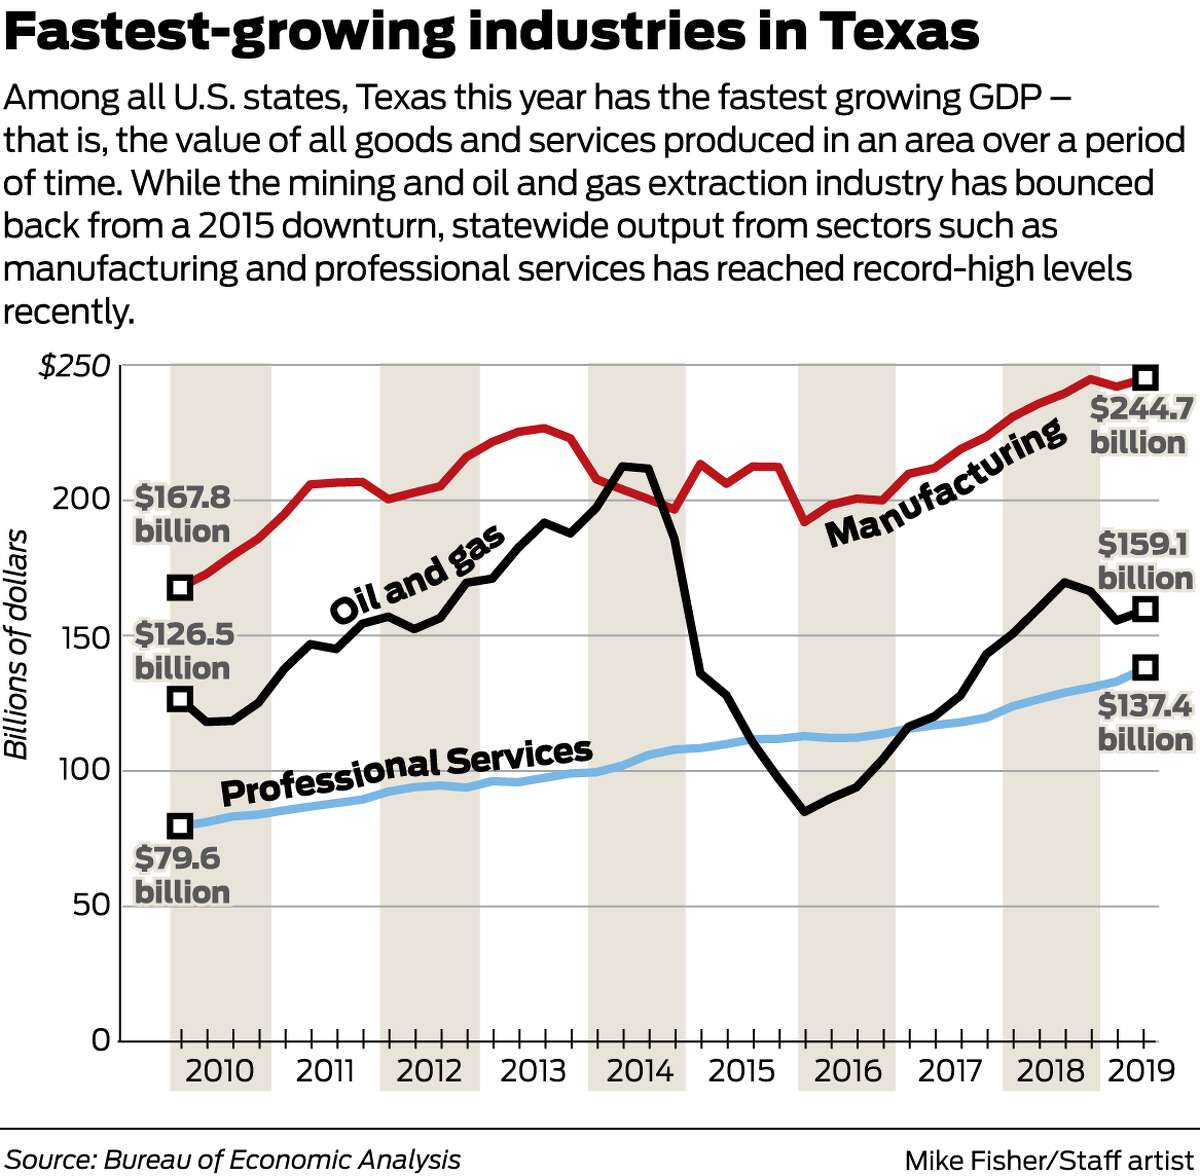 Texas GDP growth top among U.S. states